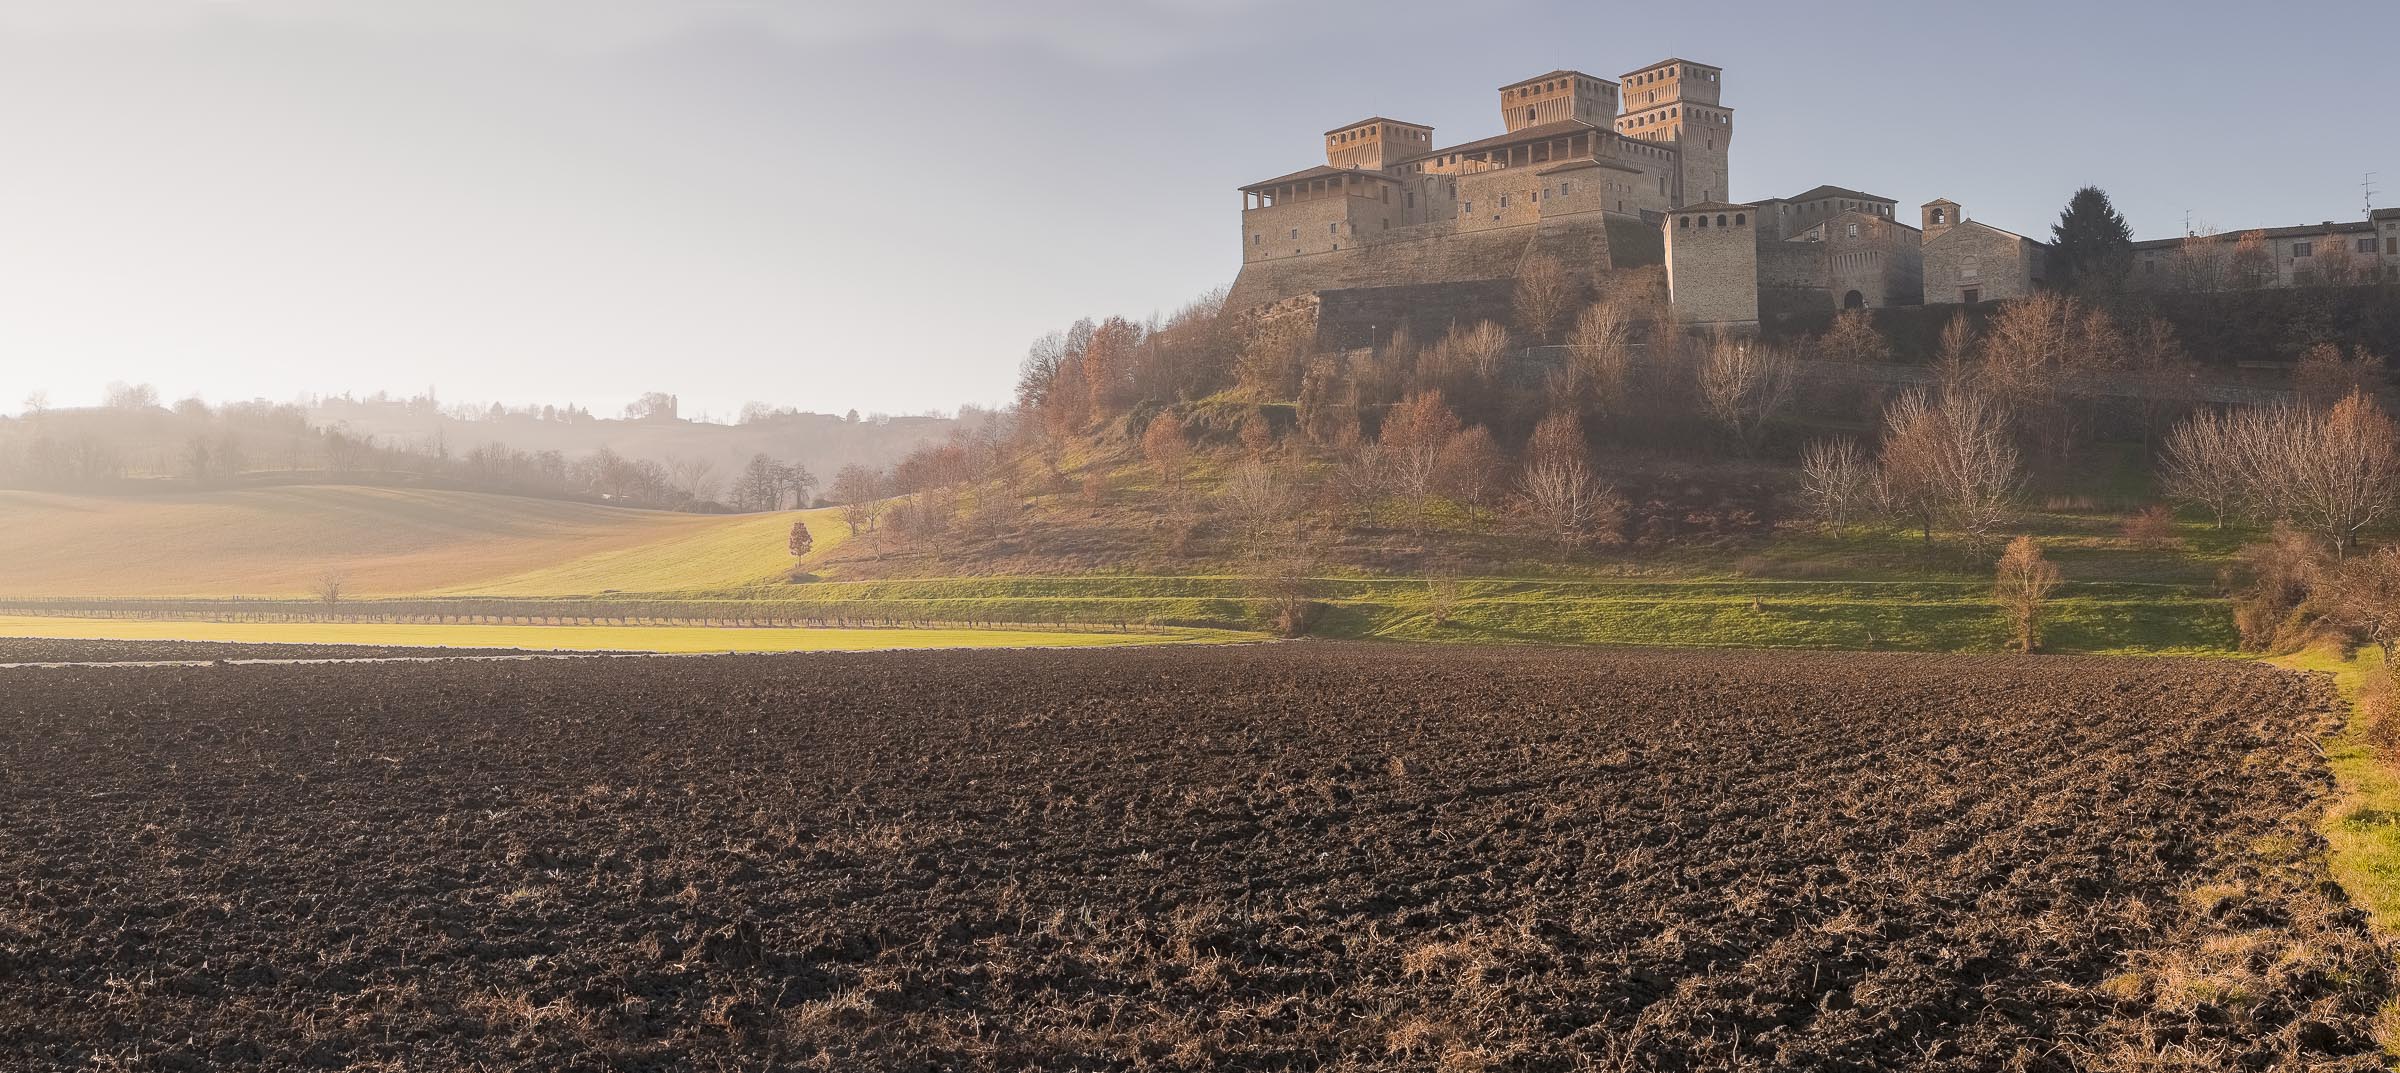 Castello di Torrechiara...